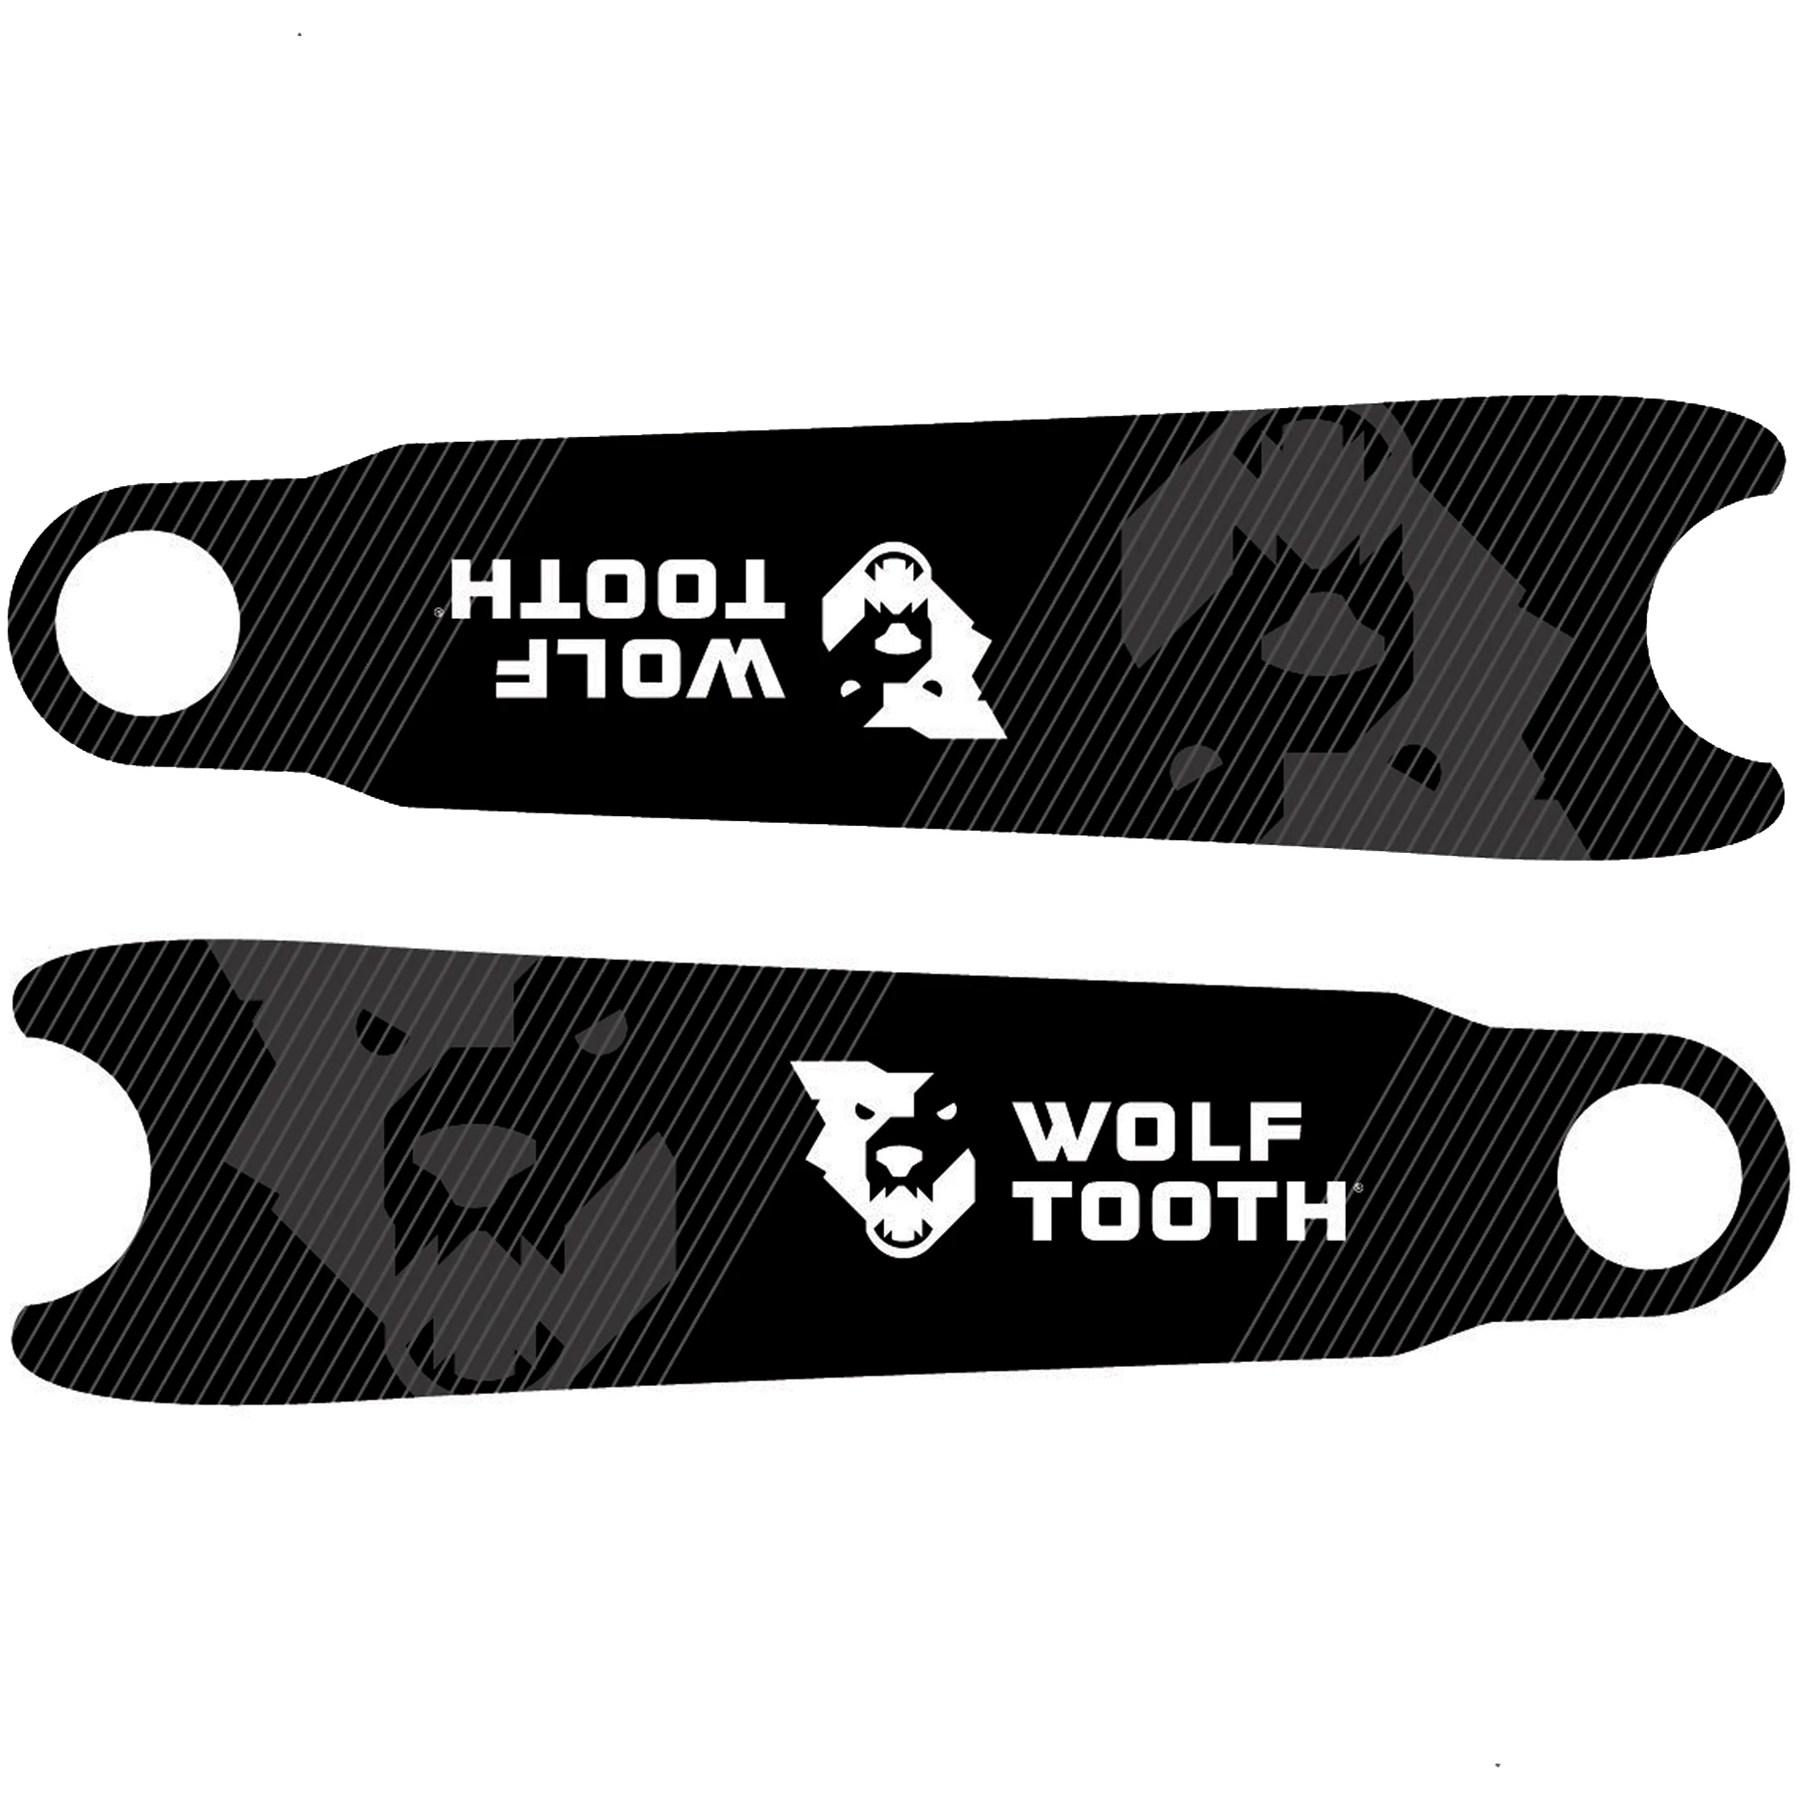 Produktbild von Wolf Tooth Kurbelarm Schutzfolien - logo black